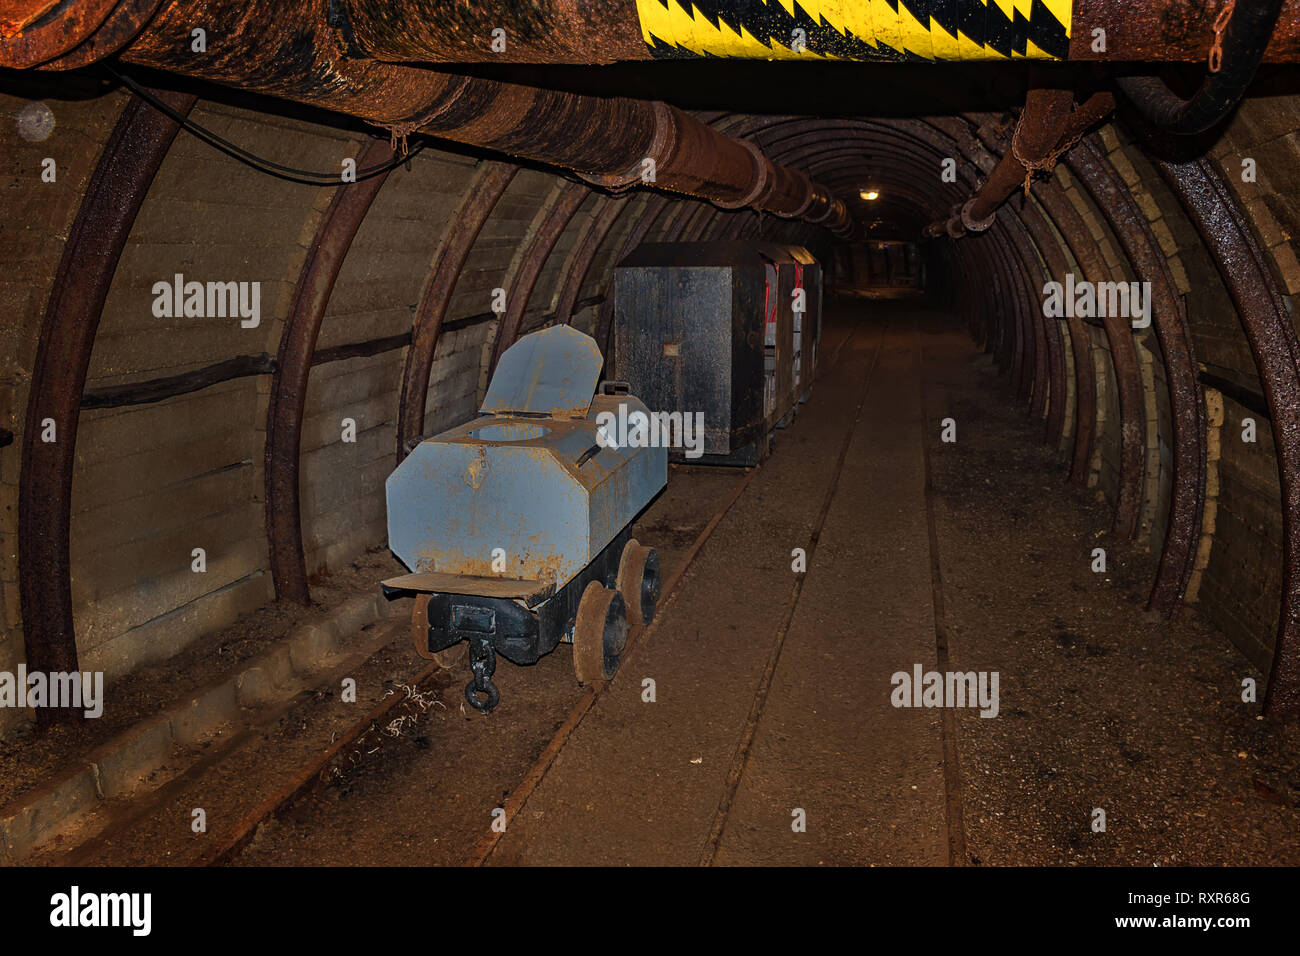 Alte wc Wagen und Metall Grubenbahn in meinem Tunnel mit hölzernen Holzausbau Stockfoto